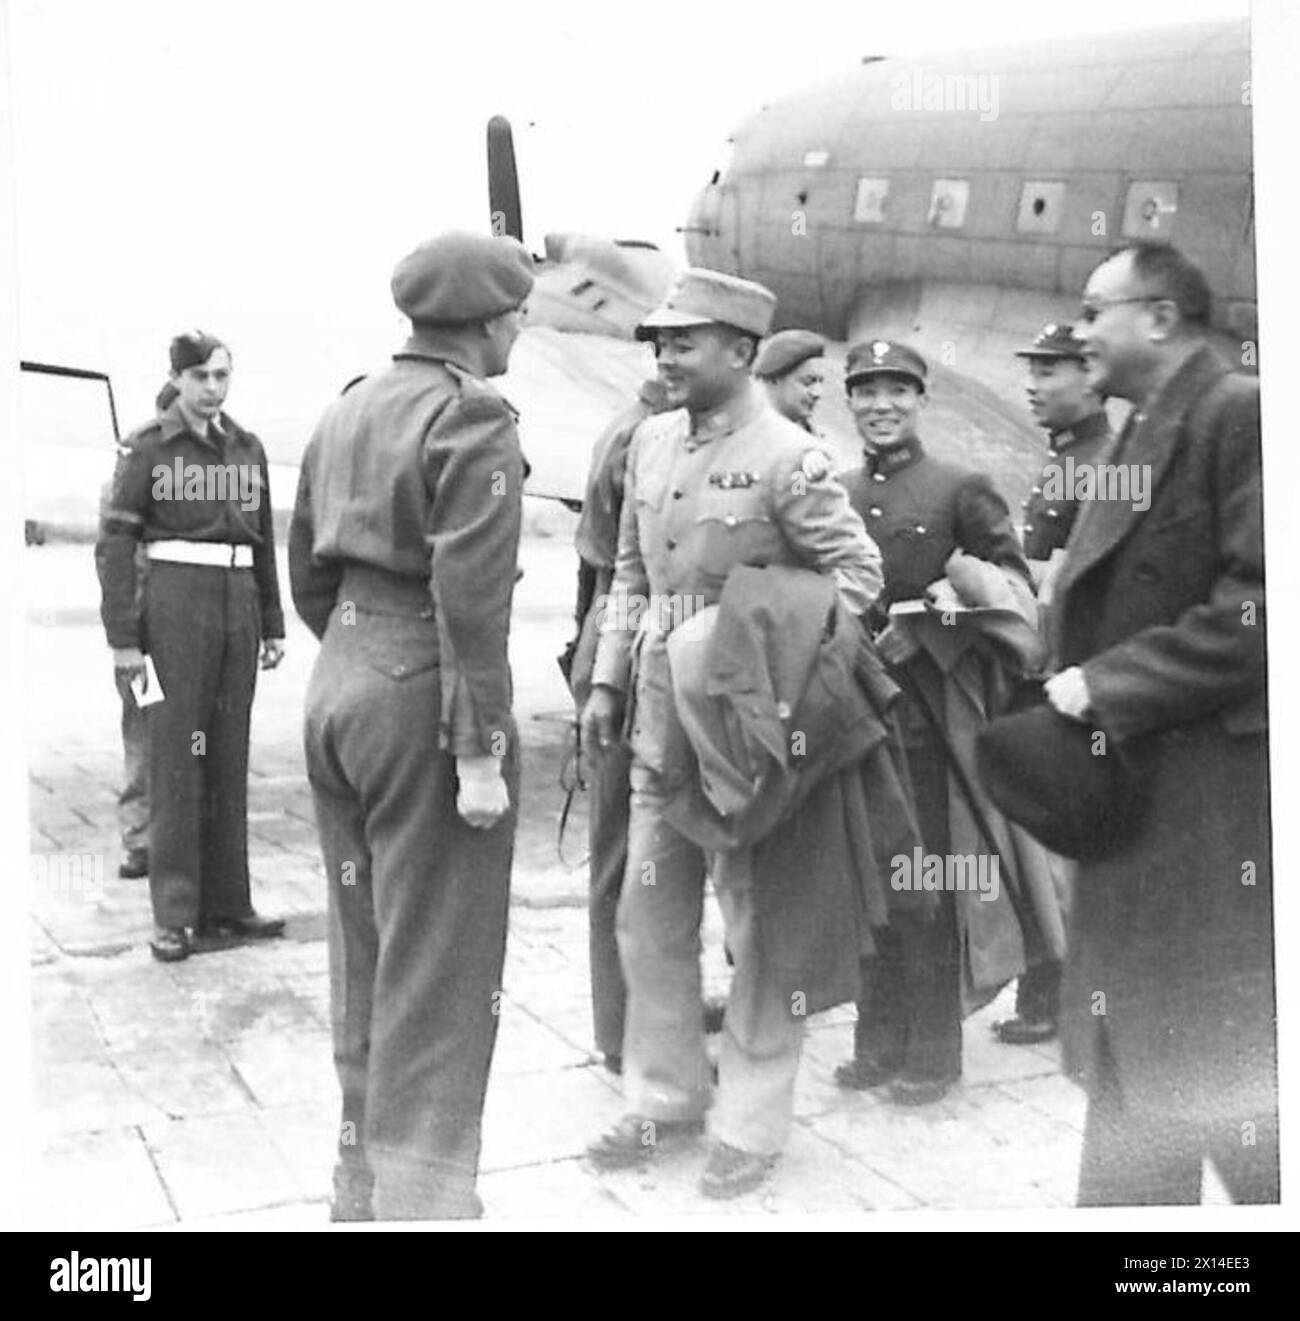 IL GENERALE CINESE VISITA AMBURGO - le immagini mostrano il maggiore generale Feng Yee e il suo staff prima della loro partenza dall'aeroporto di Amburgo British Army of the Rhine Foto Stock